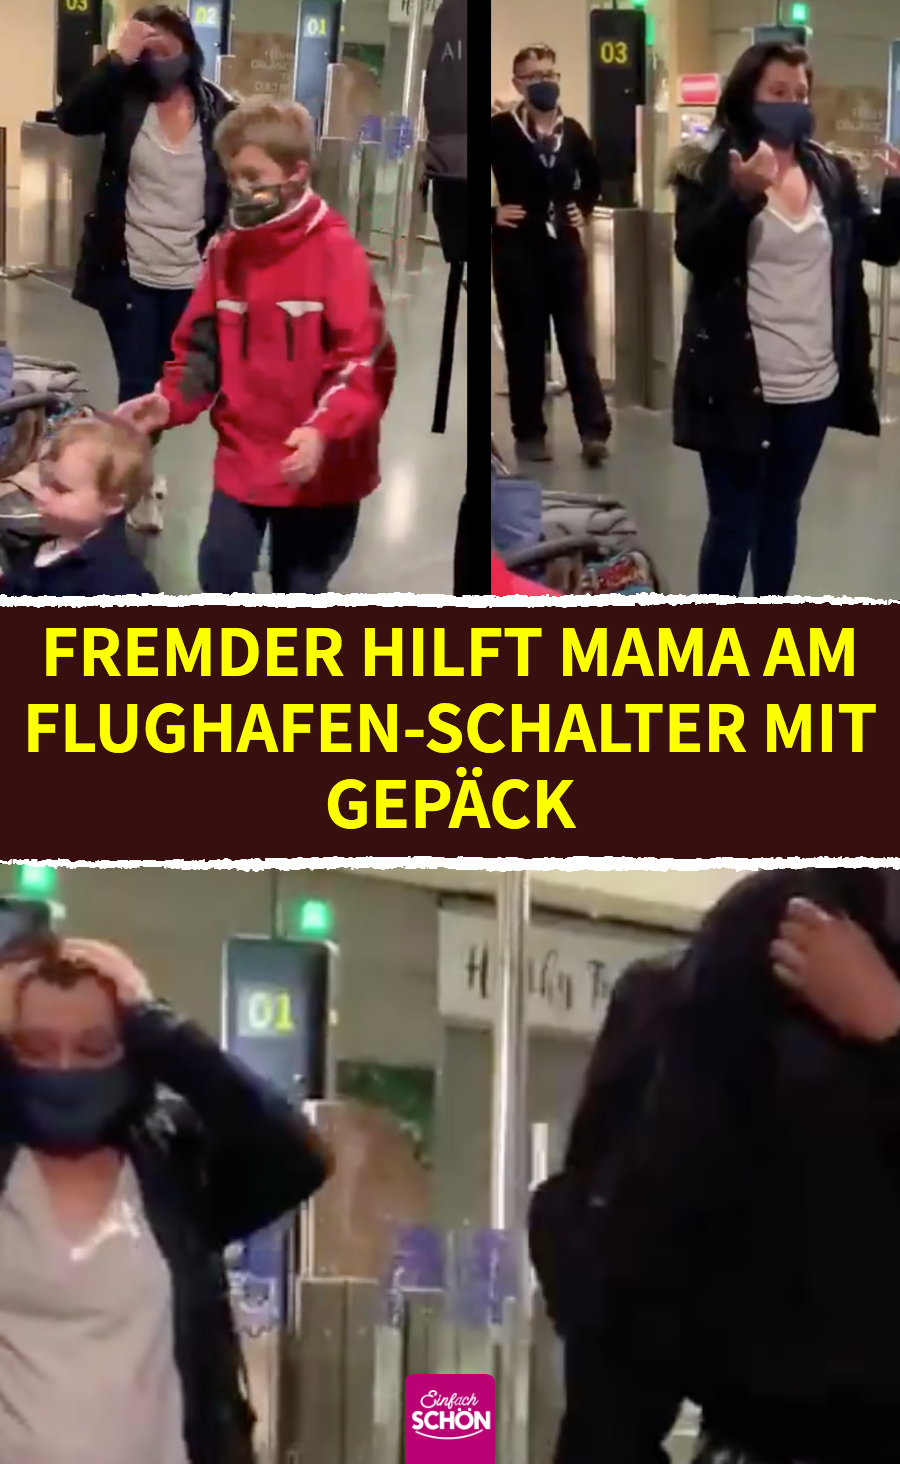 Fremder hilft Mama Stephanie am Ryanair-Schalter mit Gepäck